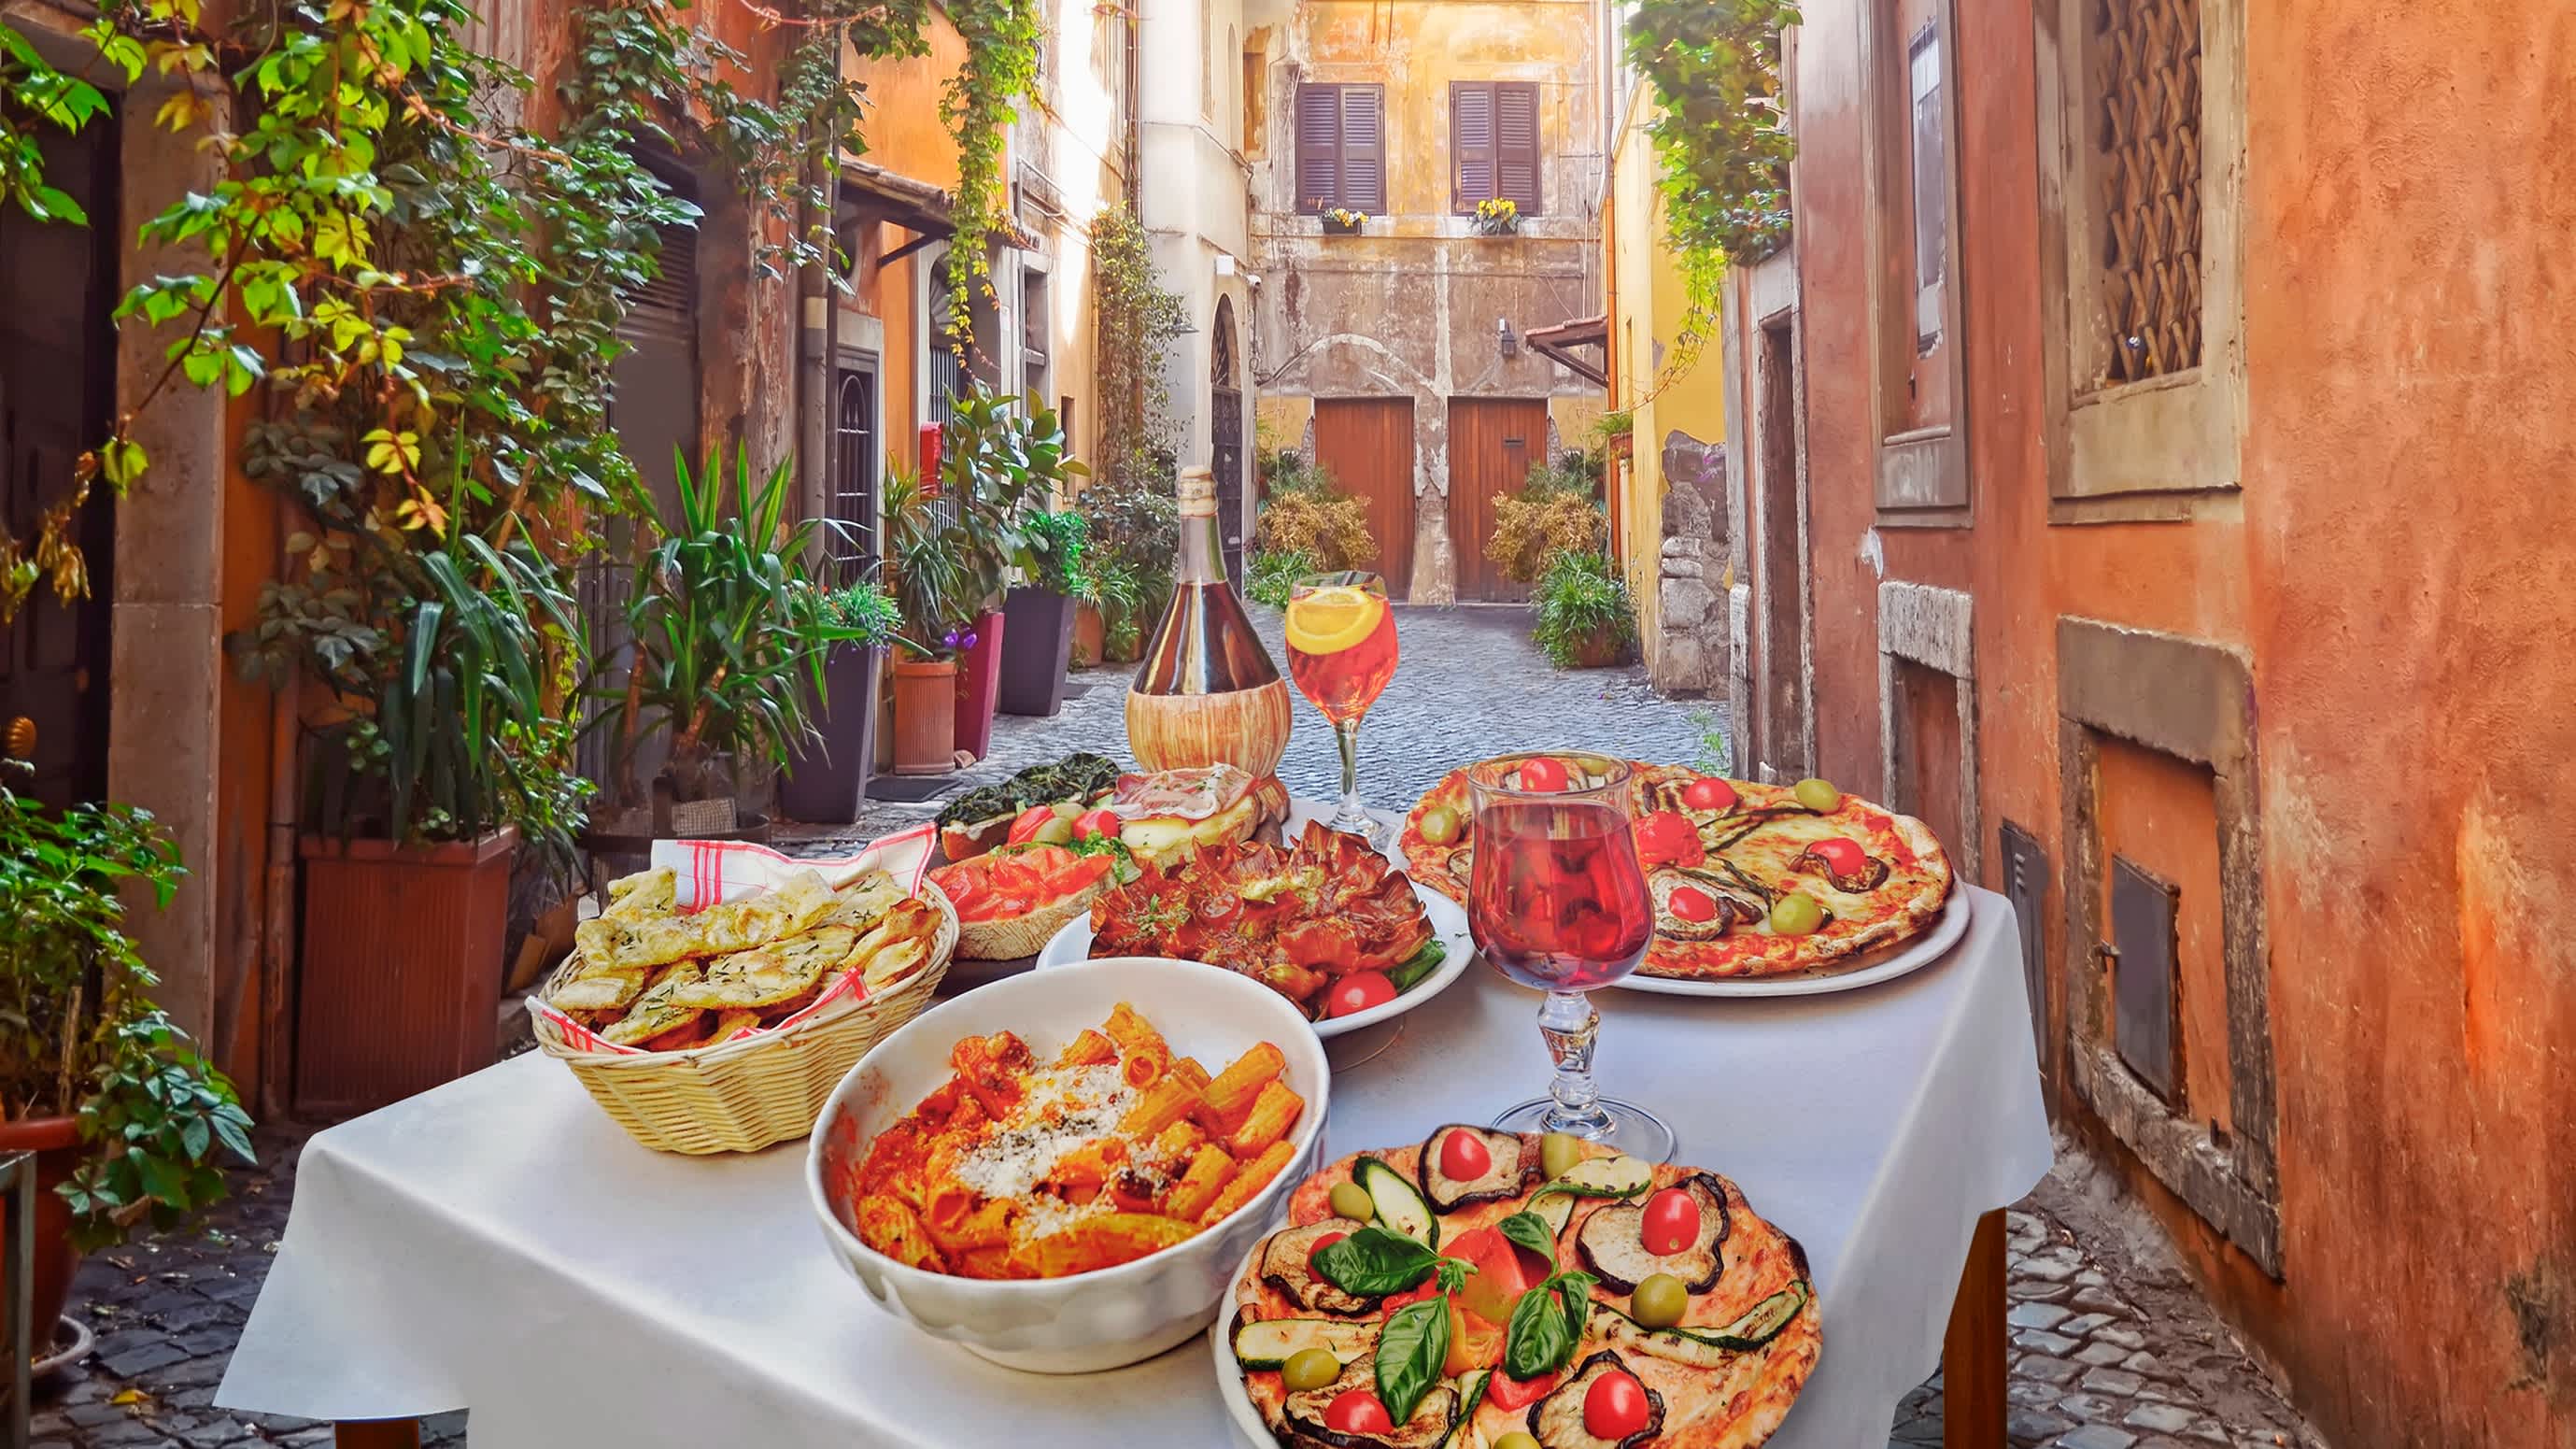 Traditionelle italienische Speisen in einem Restaurant in Rom.
